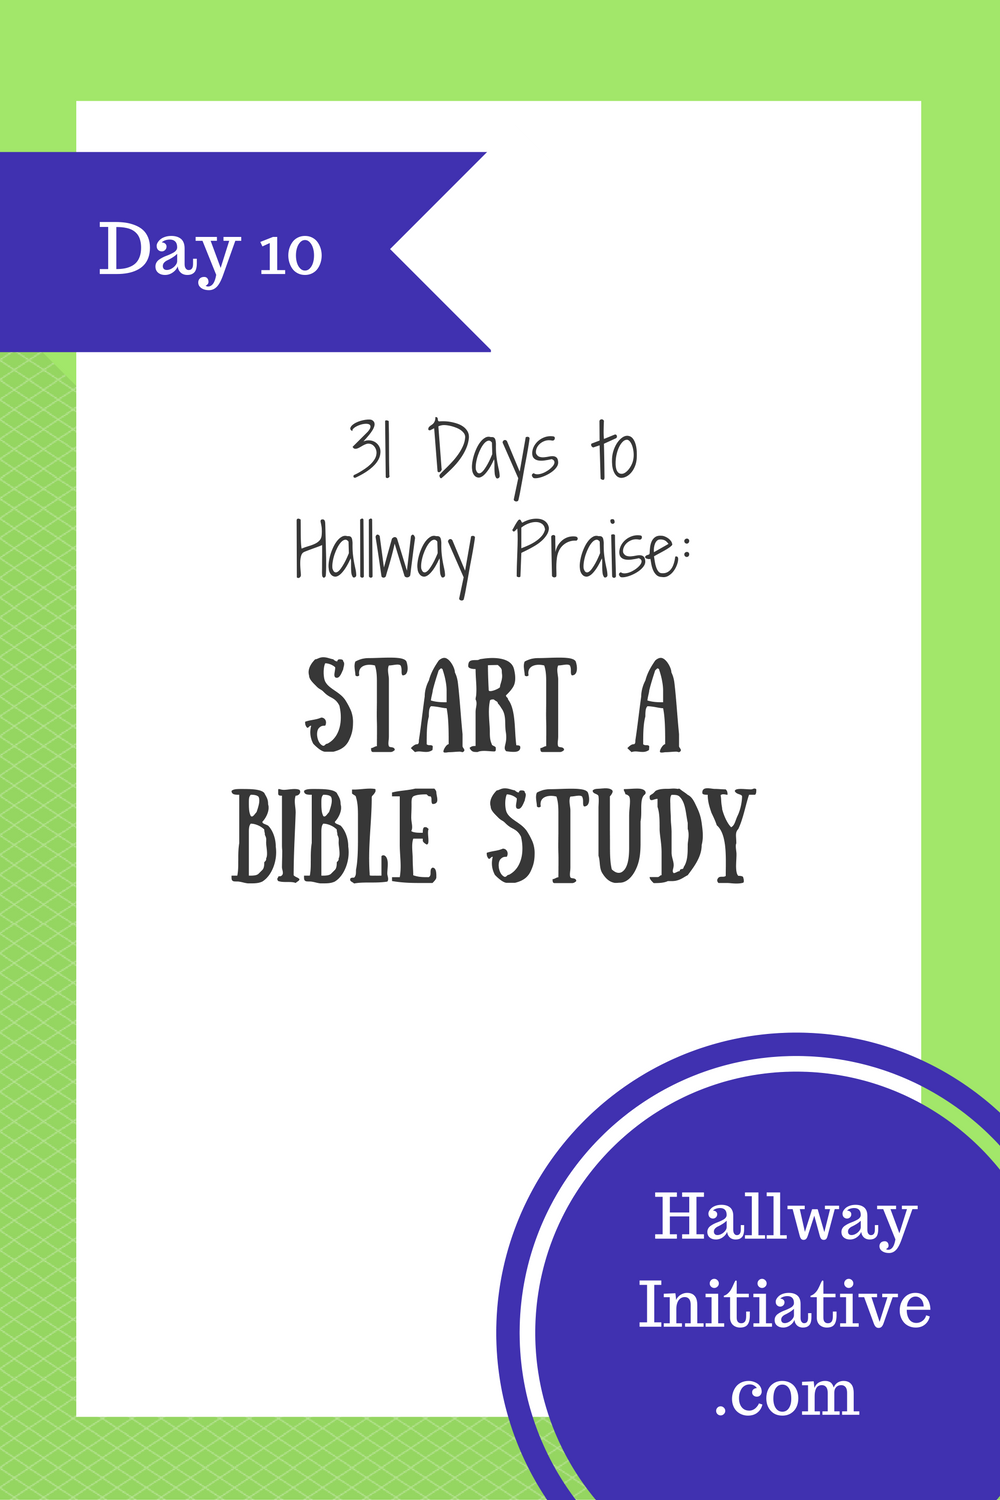 Day 10: start a Bible study